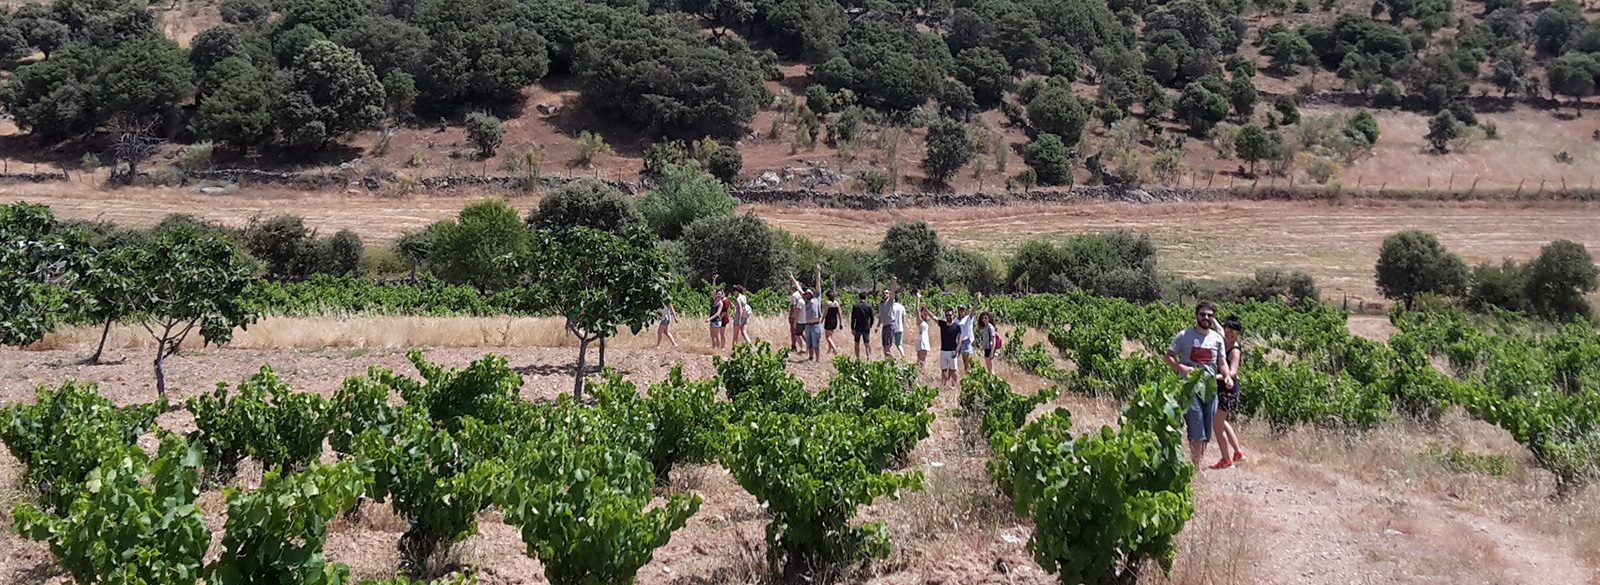 Catando en viña: el equipo Bodeboca en Gredos